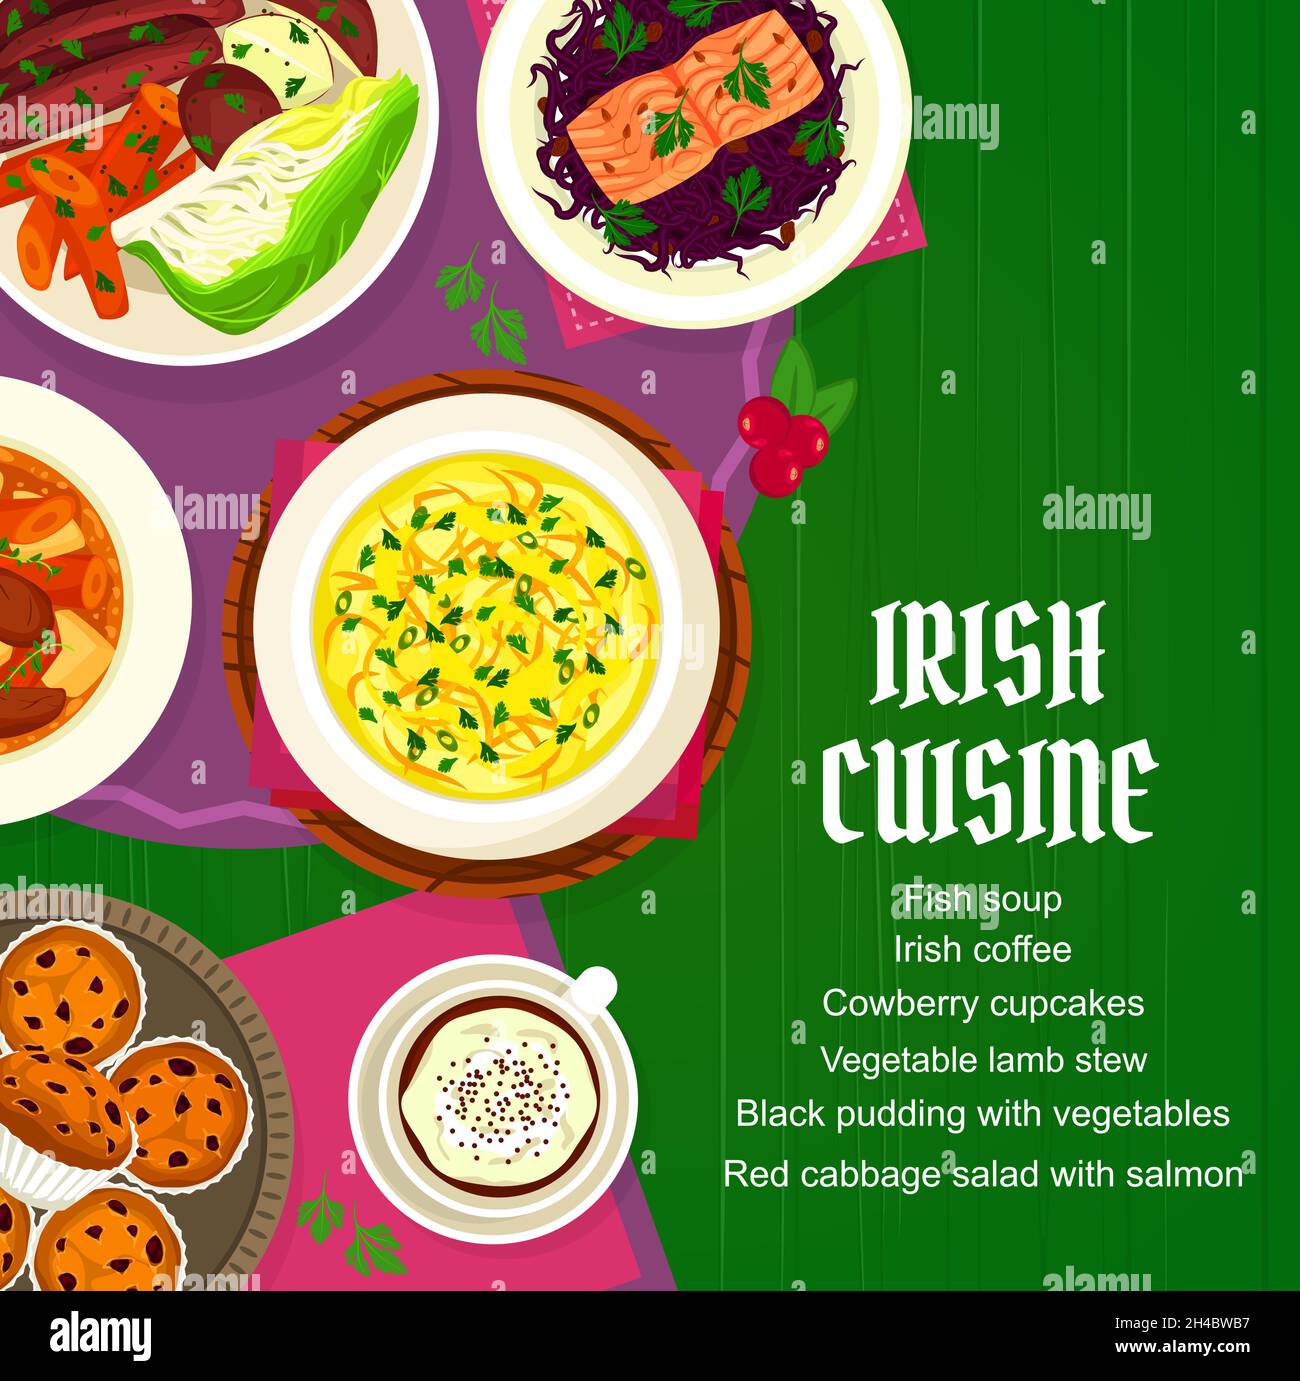 Menu vettoriale della cucina irlandese con pasti zuppa di pesce, caffè e cupcake di cowberry. Stufato di agnello vegetale, budino nero con verdure o cavolo rosso Illustrazione Vettoriale